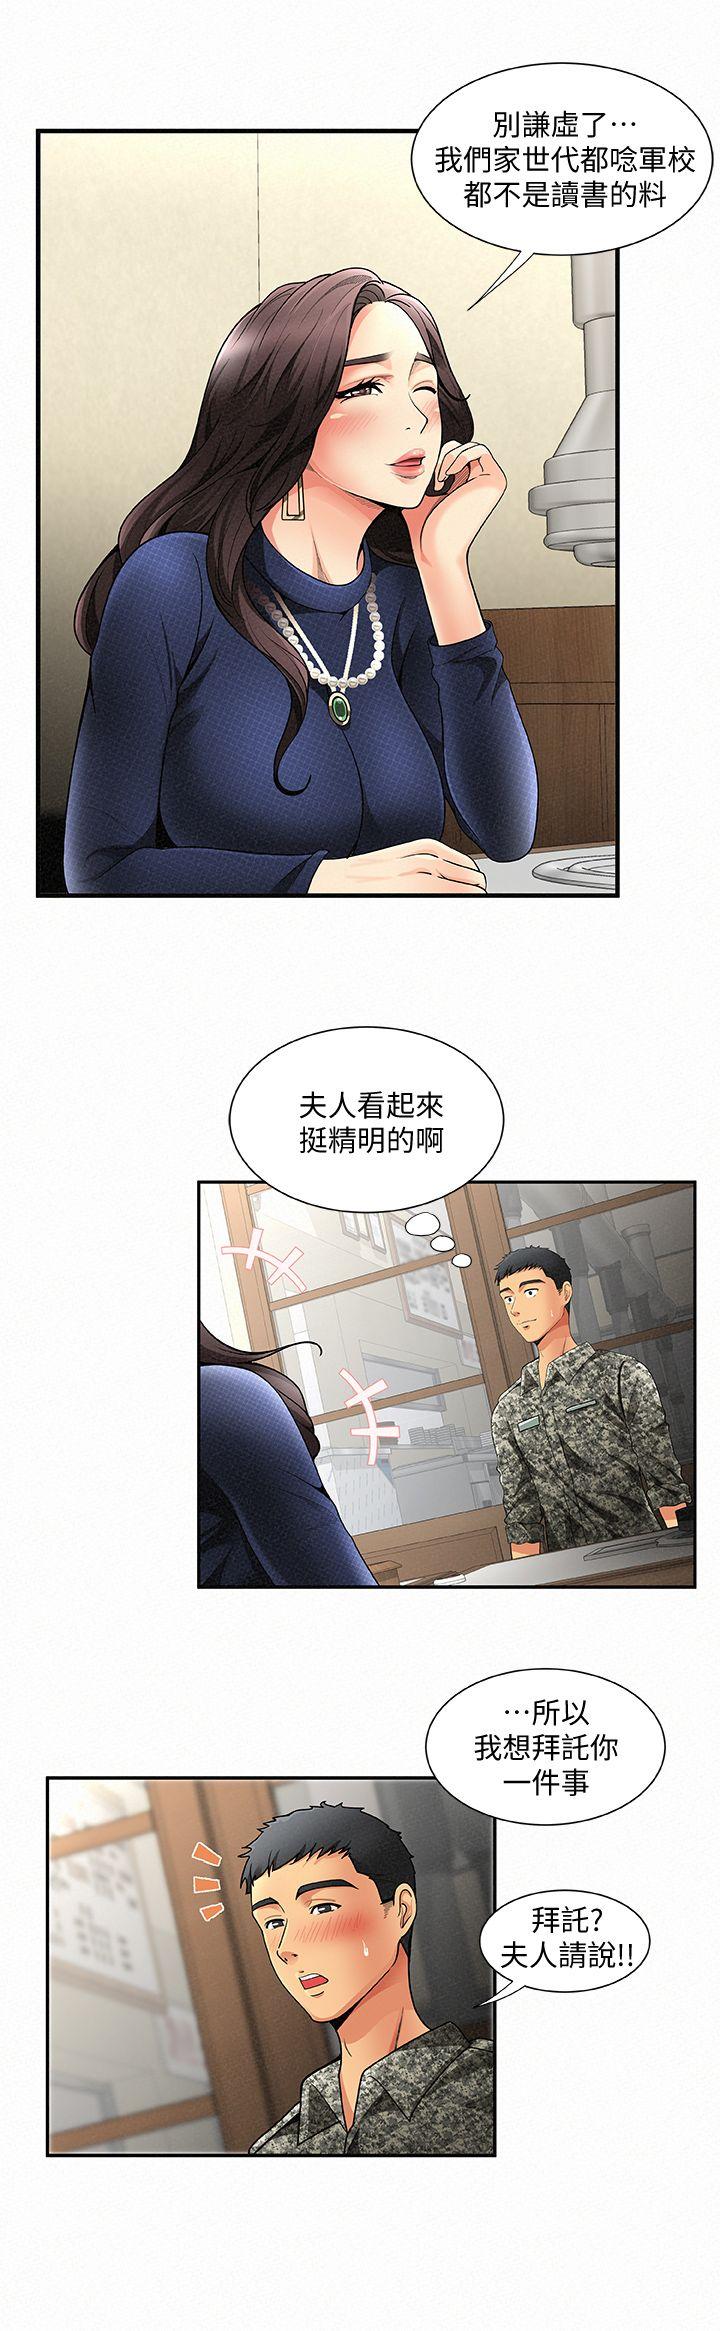 韩国污漫画 報告夫人 第1话-给大头兵的爽缺 12